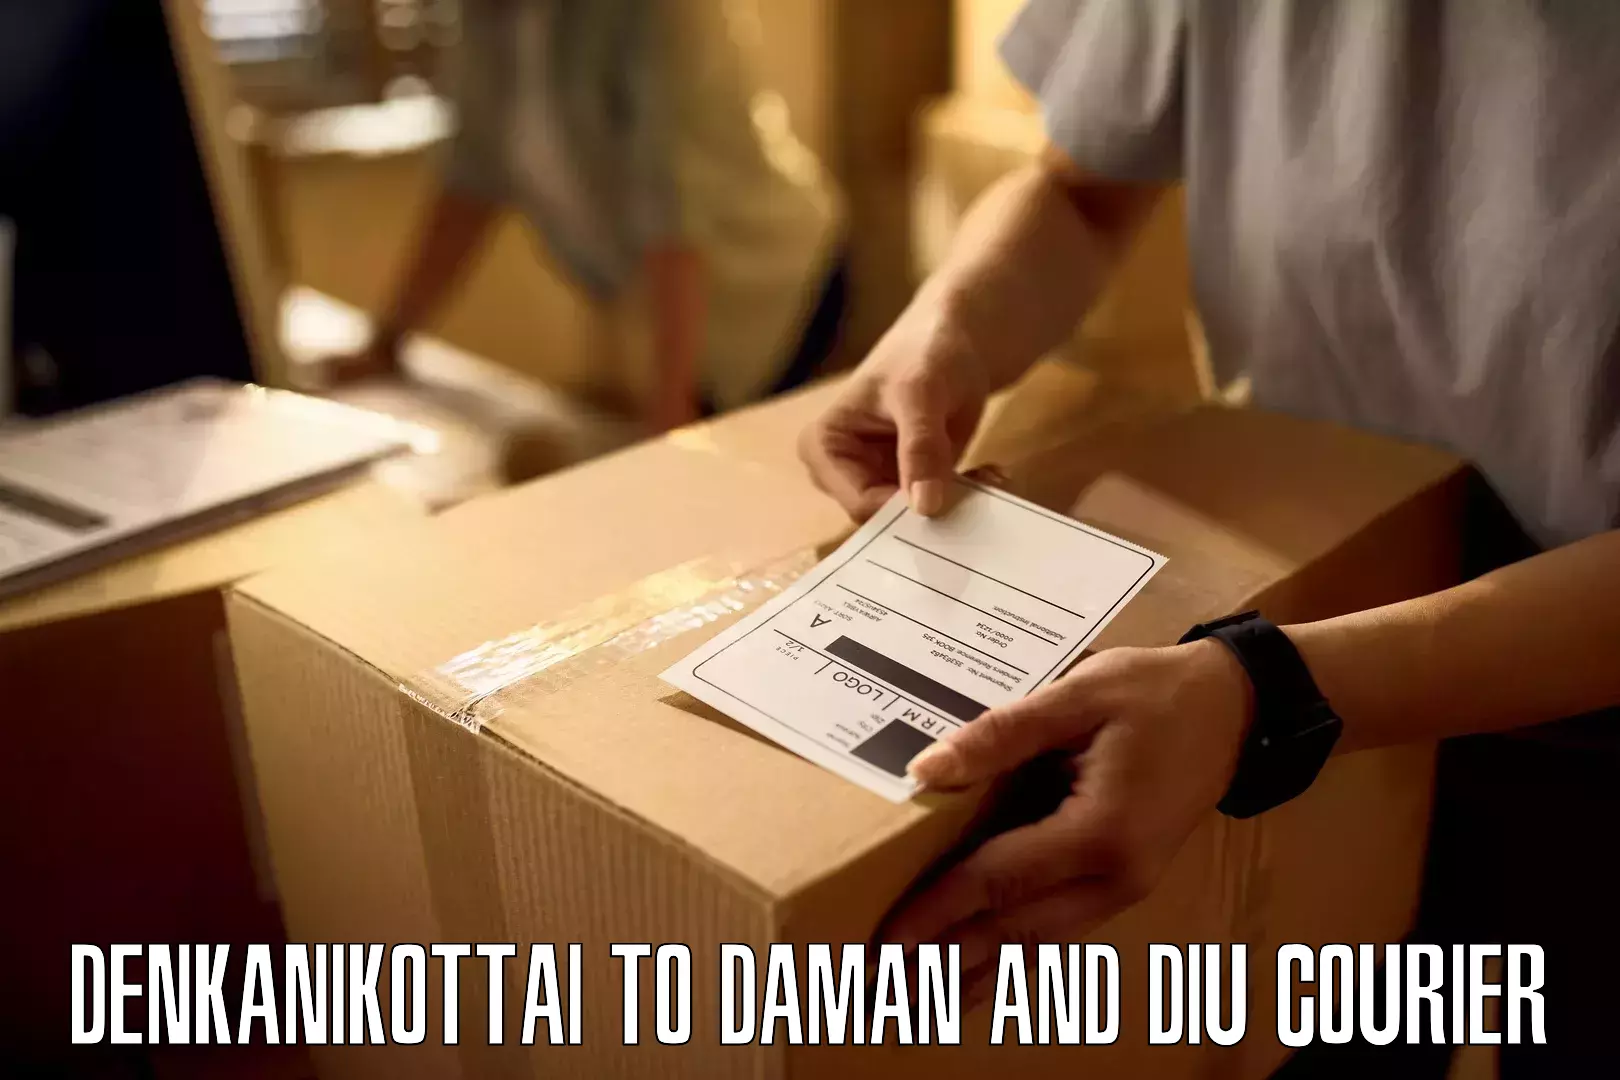 24/7 courier service in Denkanikottai to Daman and Diu